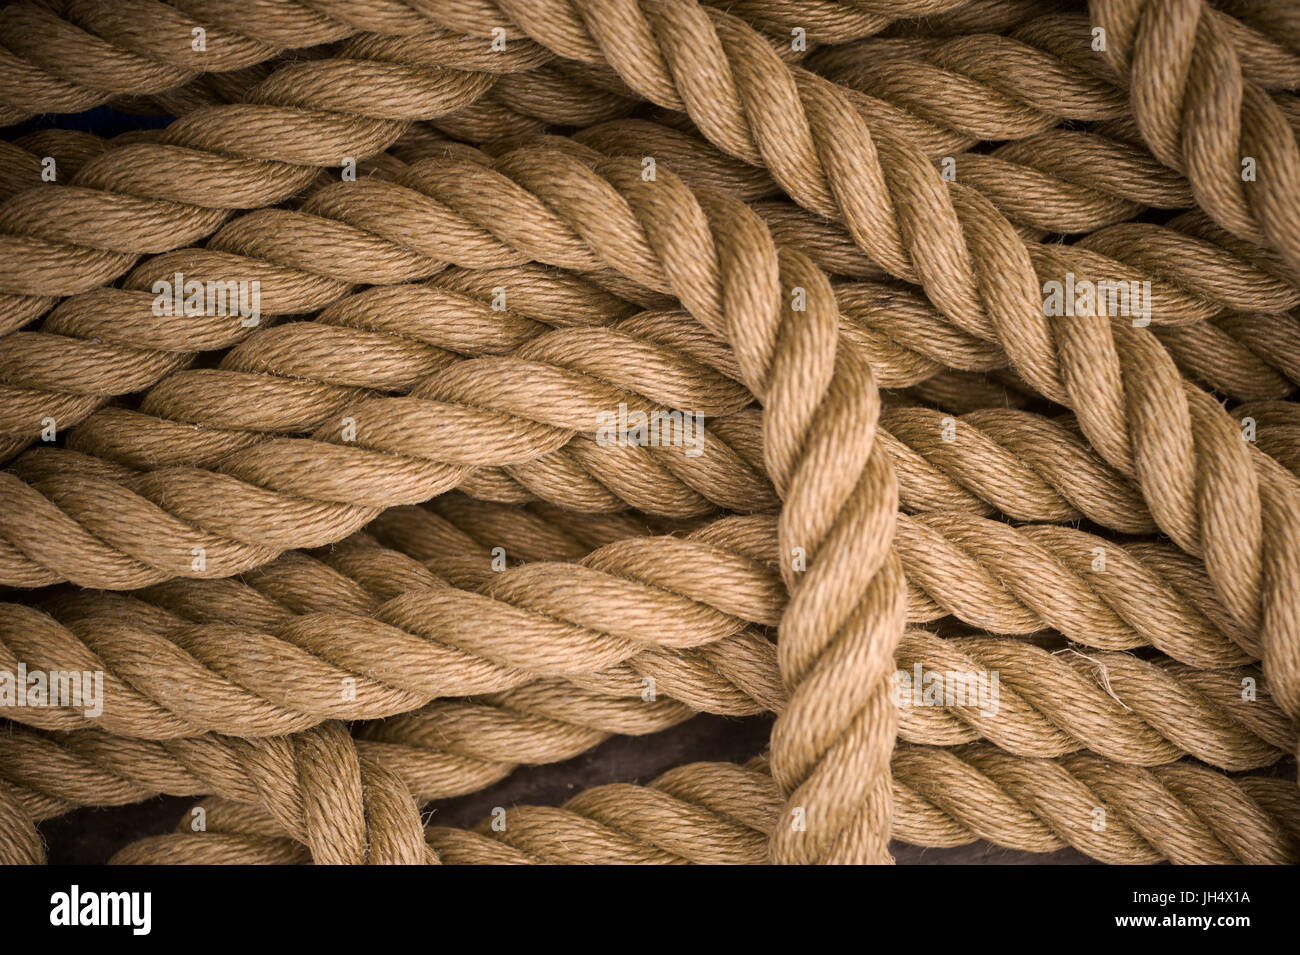 Corda nautica immagini e fotografie stock ad alta risoluzione - Alamy